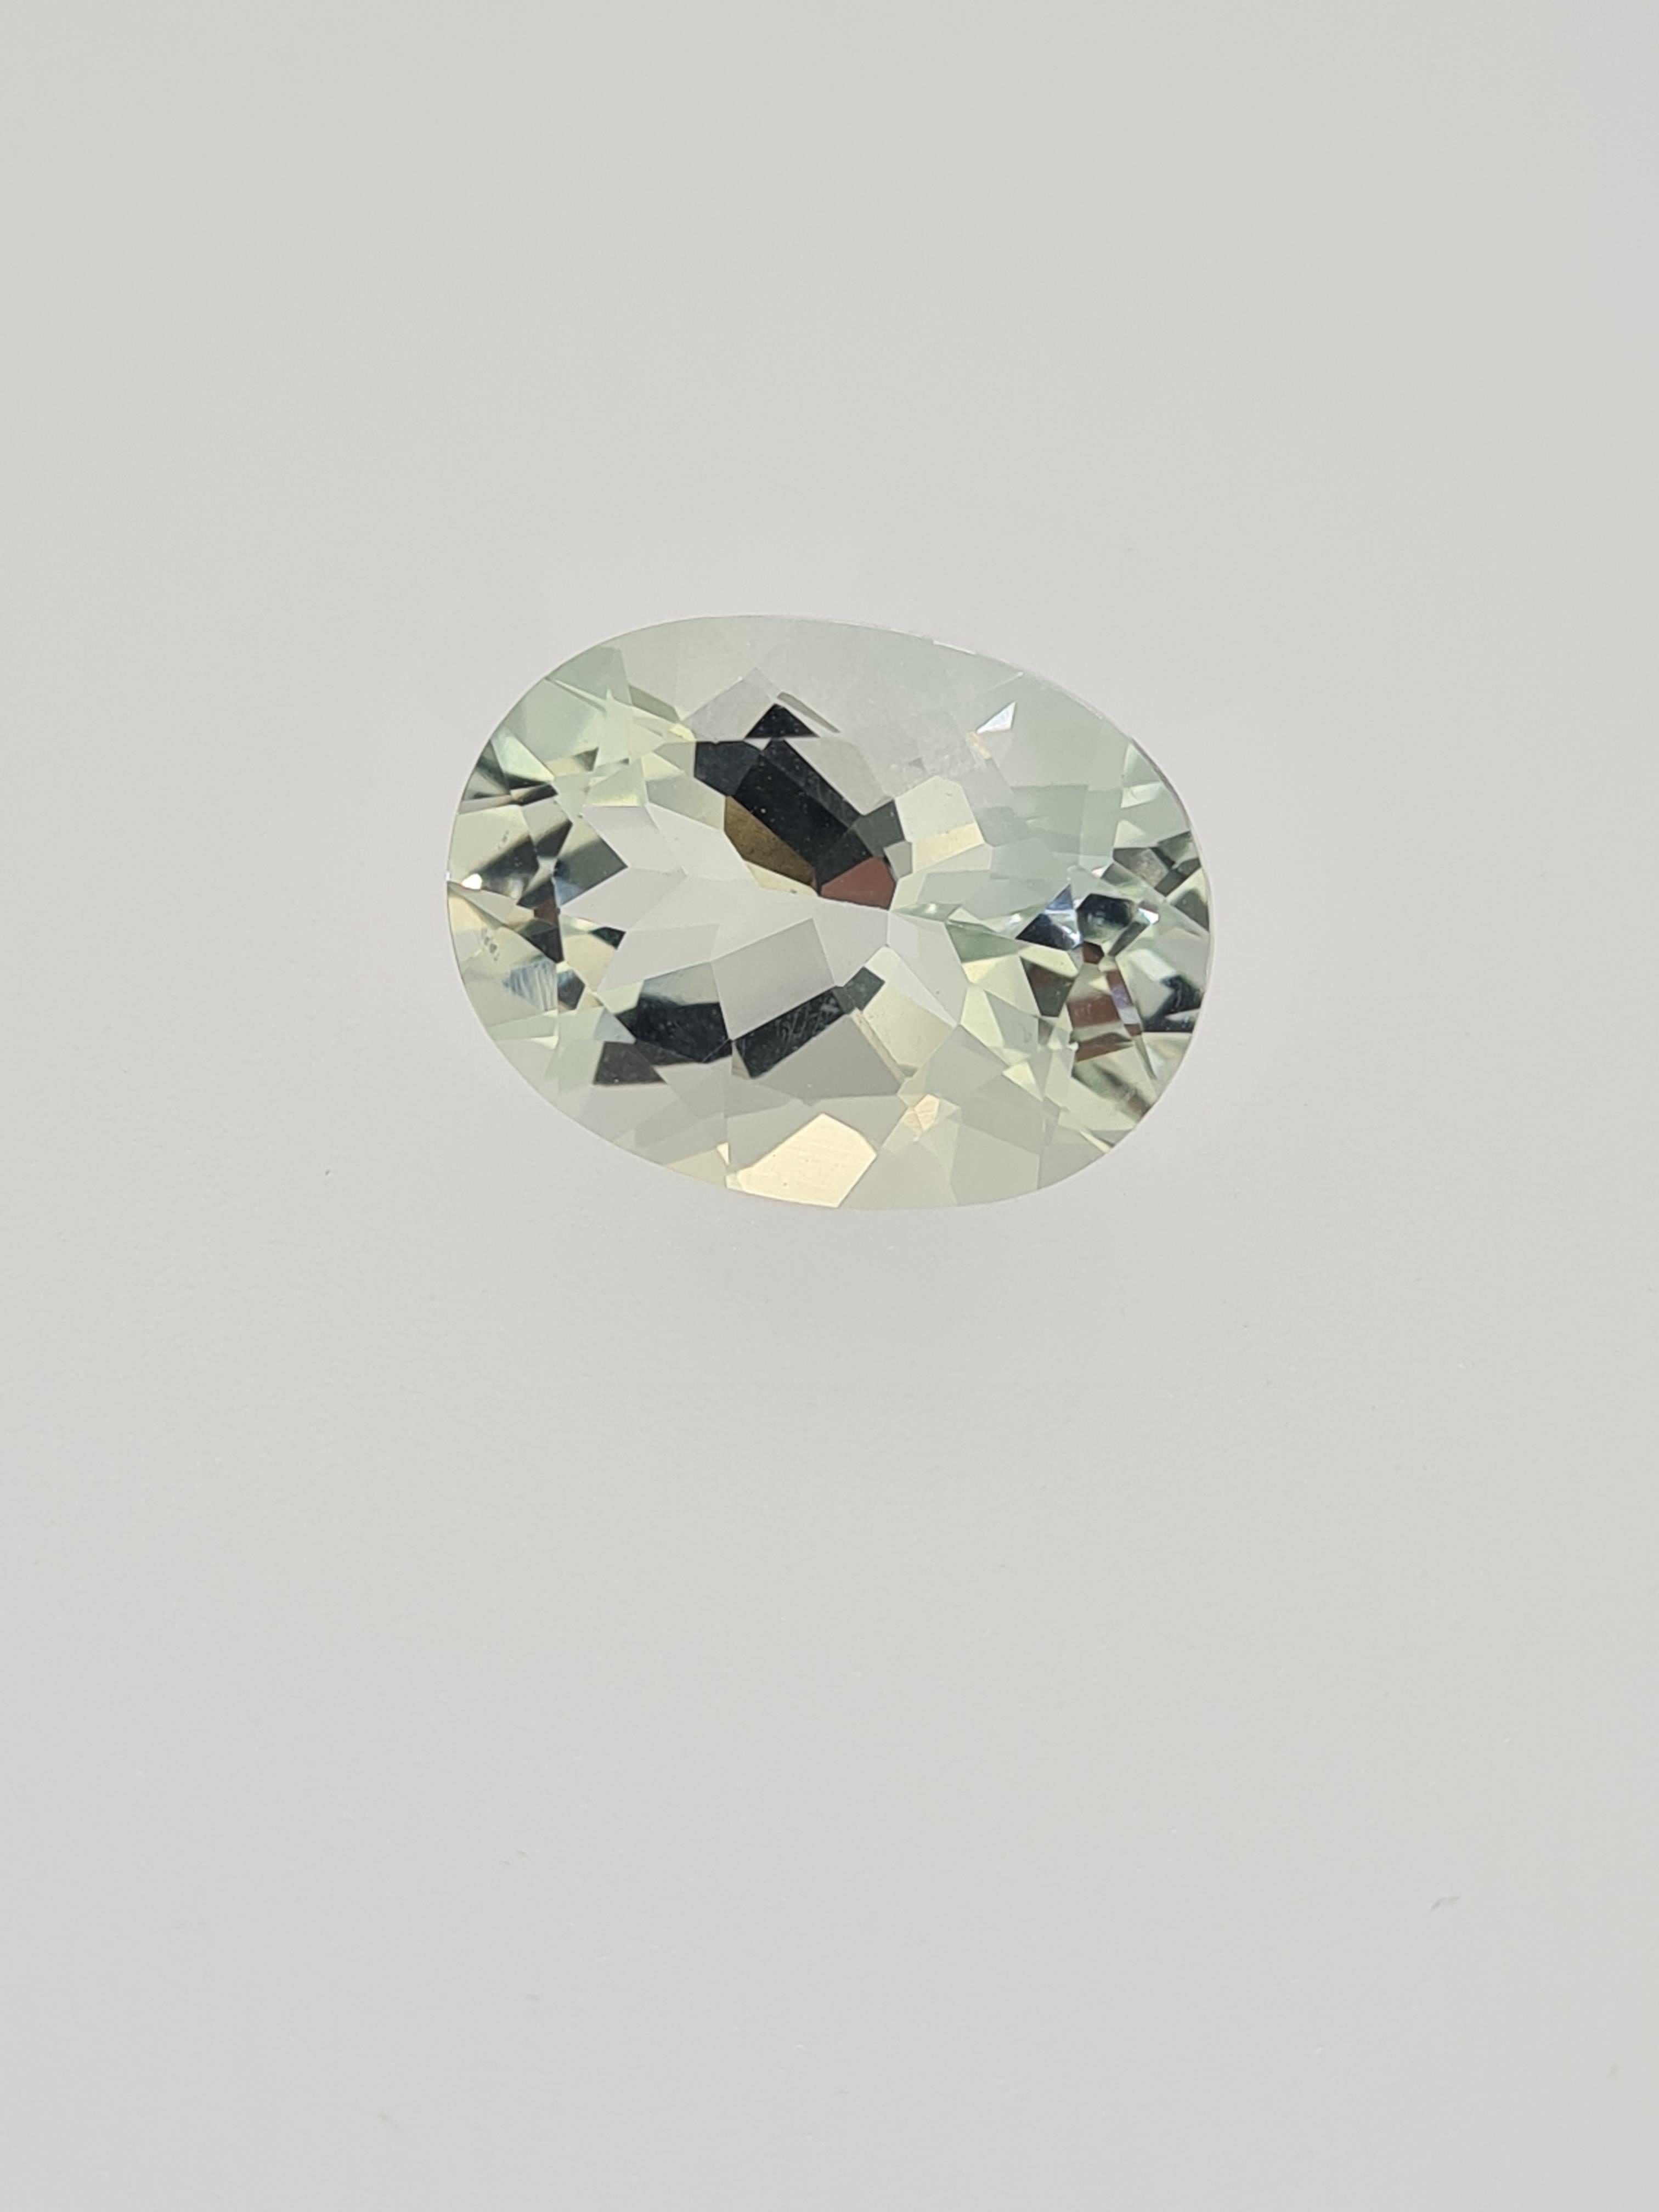 Green amethyst oval cut gem stone - Image 5 of 5